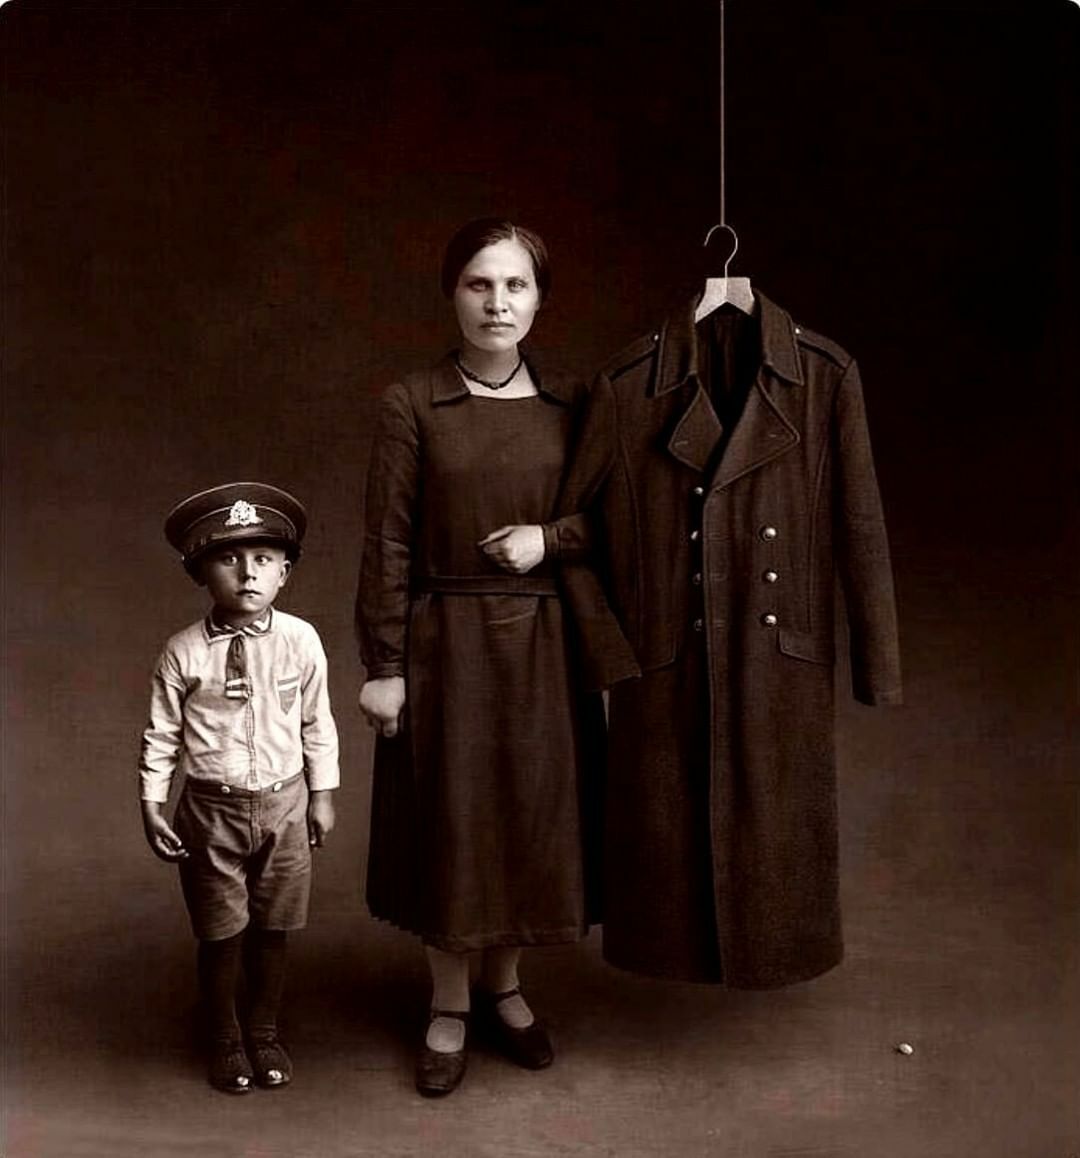 Une photo Memento Mori pour le mari et le père d’un soldat perdu, 1925. Le garçon qui porte la casquette d’uniforme de son père et la femme/mère qui relie son bras à la manche de son manteau sont très touchants.